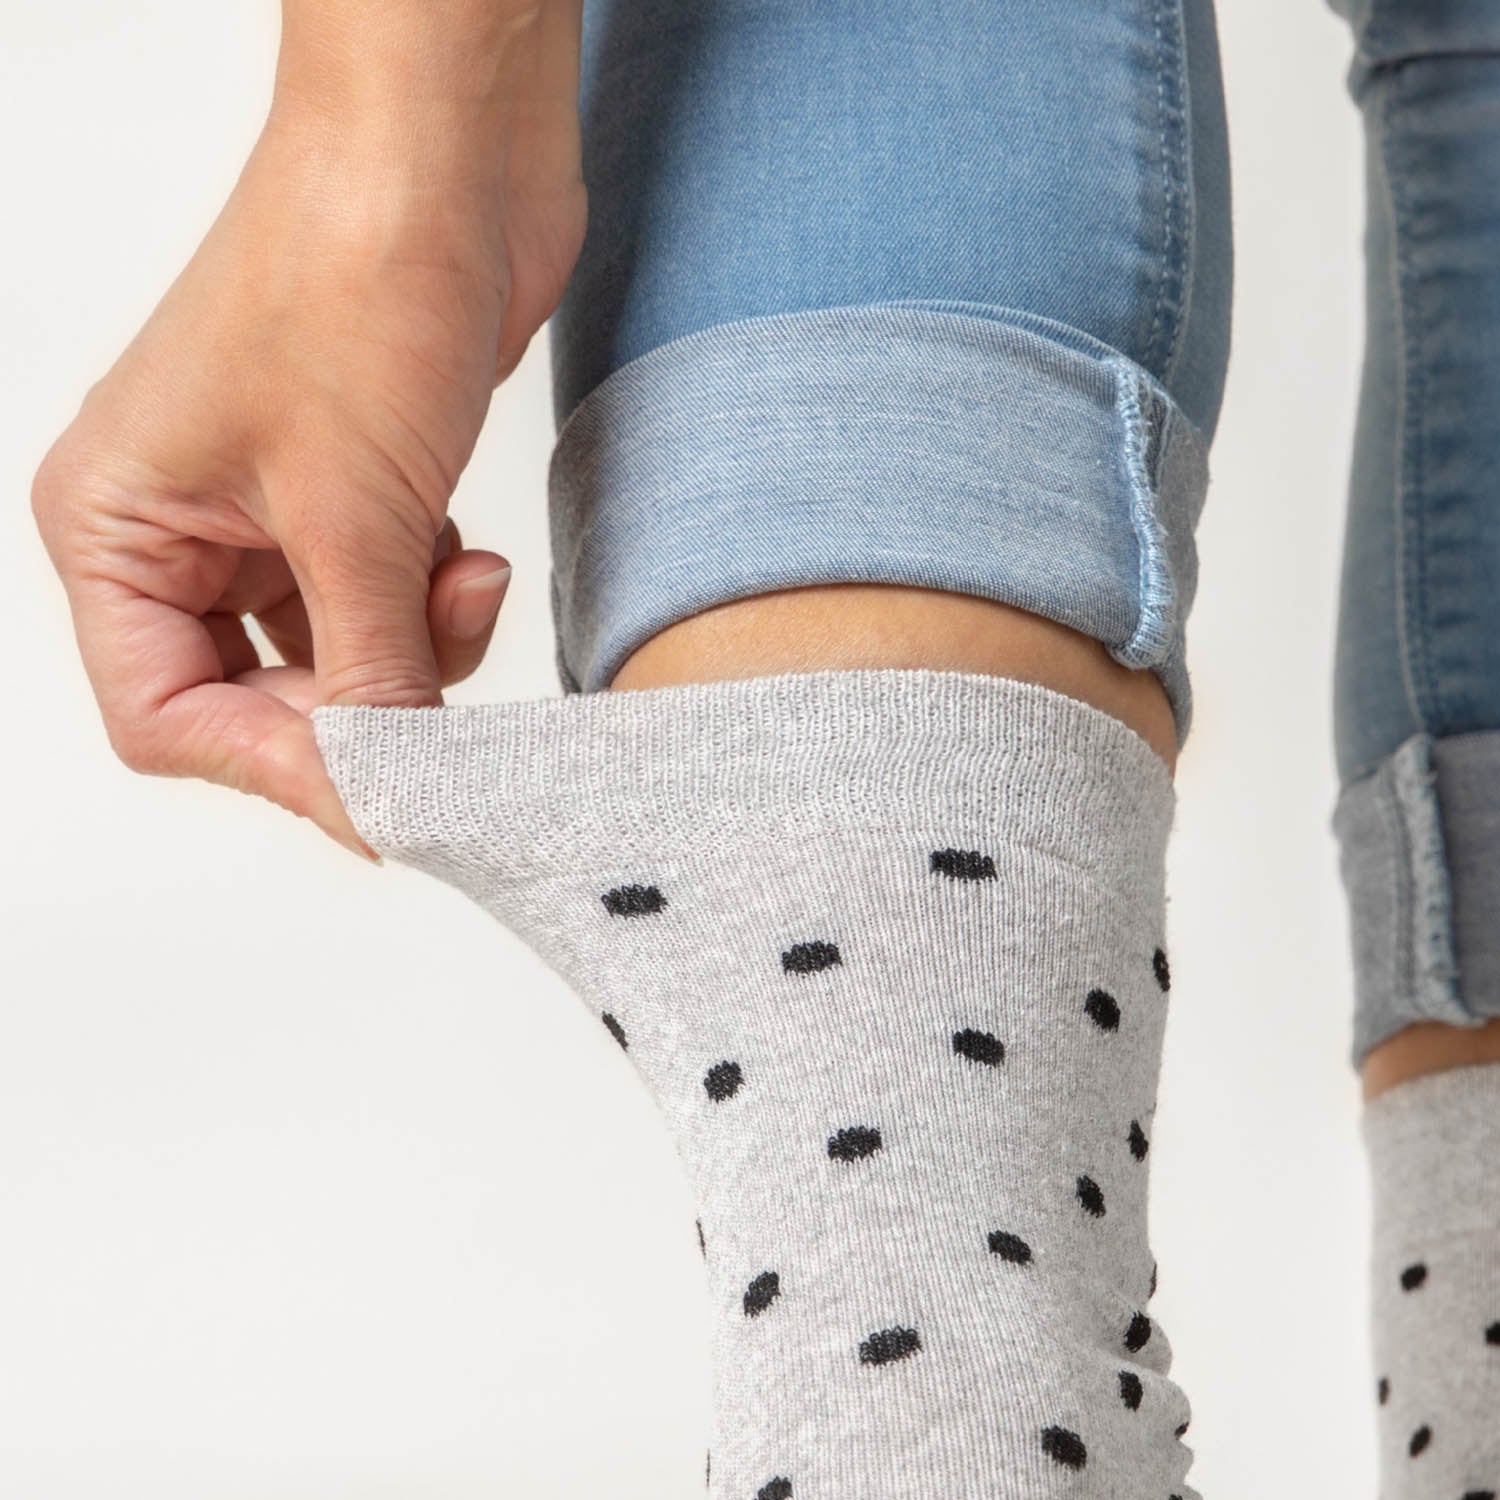 Damen Muster Socken 10er Pack (Modell: Milka)